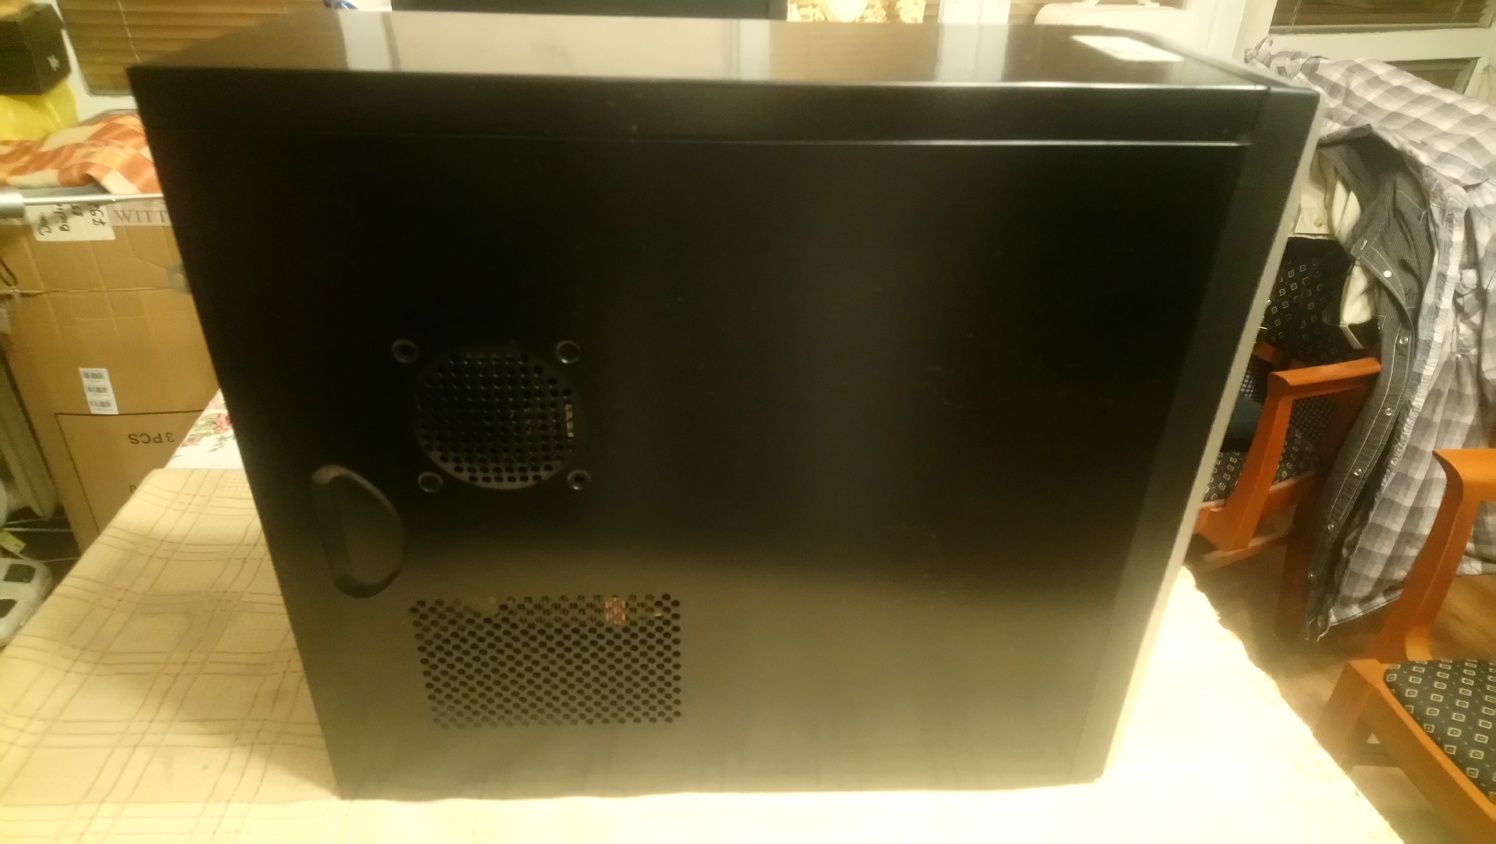 Komputer stacjonarny kompletny z monitorem Acer